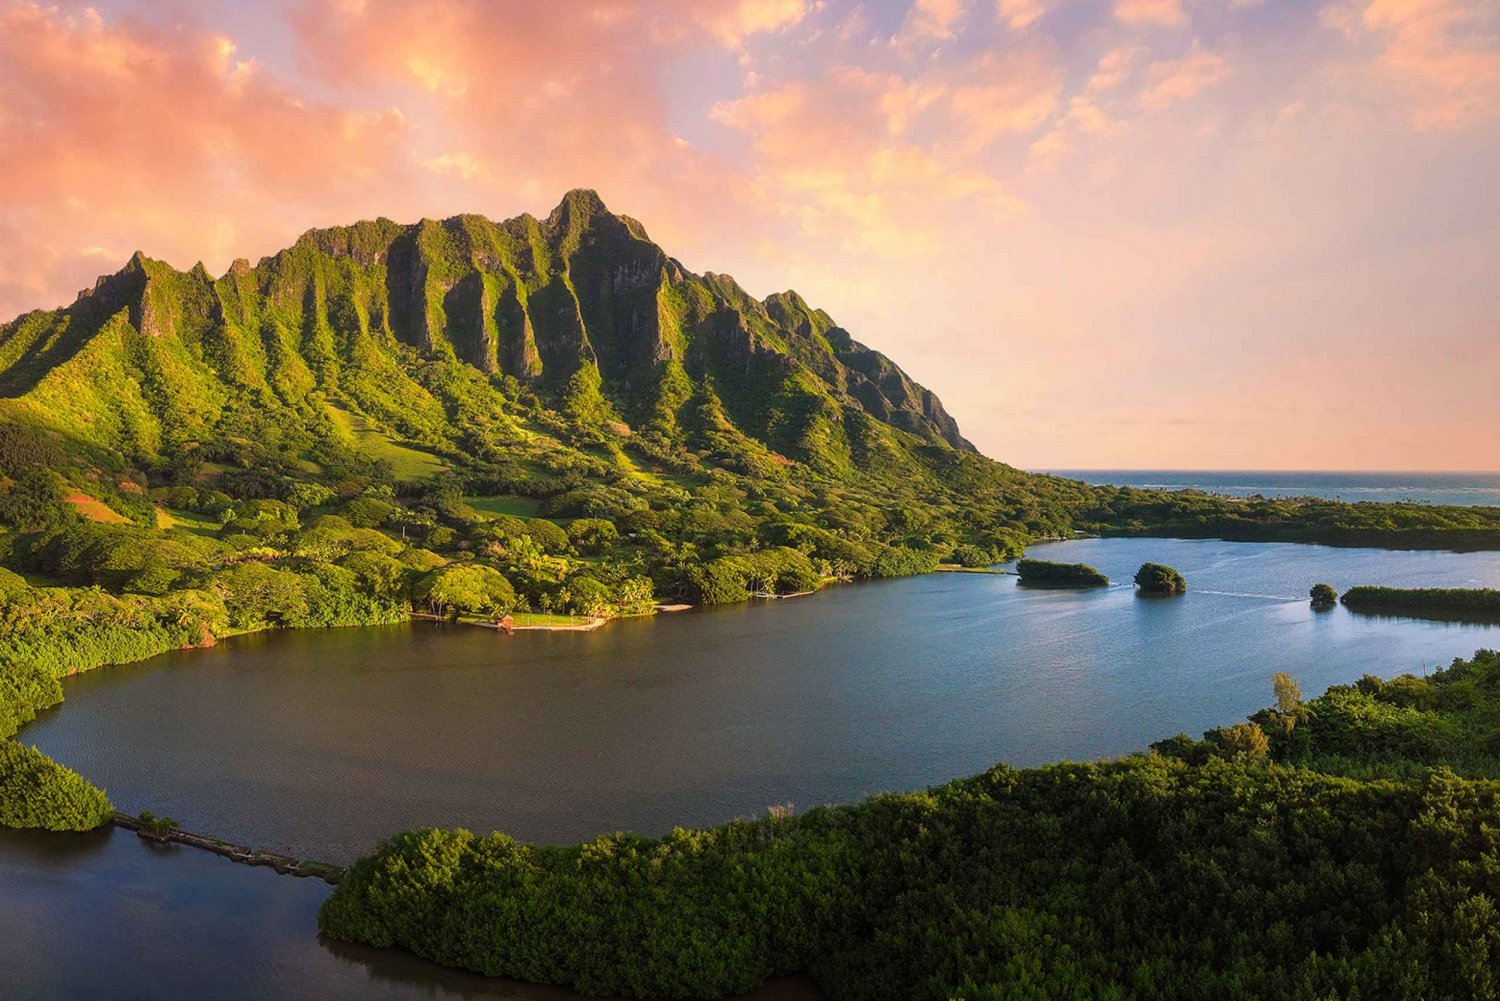 Oahu: Kualoa Movie Sites, Jungle, and Buffet Tour Package